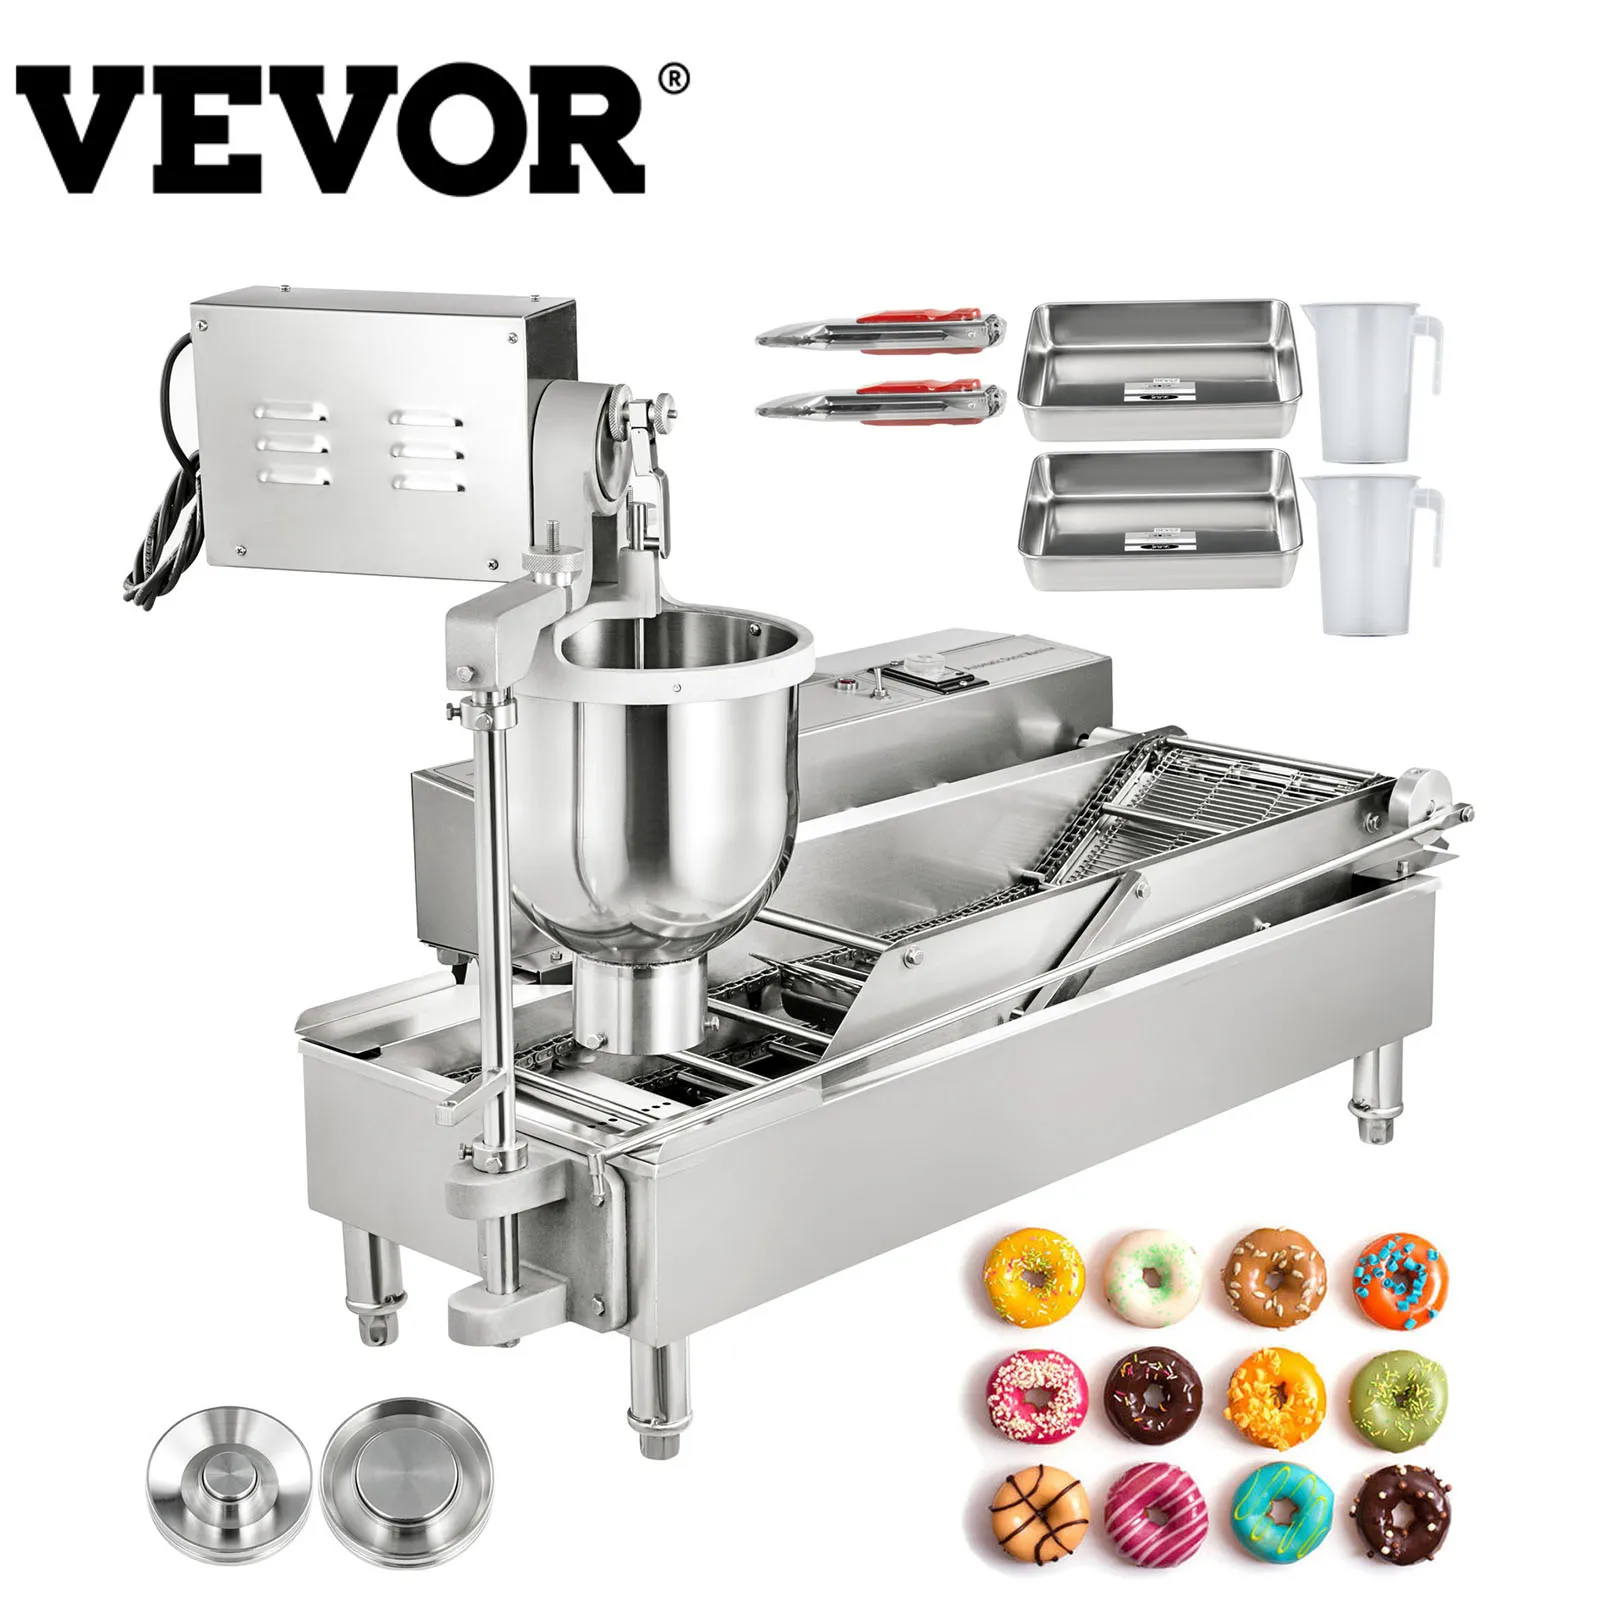 VEVOR 7L 2-рядная автоматическая машина для изготовления пончиков, автоматический прибор для приготовления пончиков, бункер с 3 размерами формы...